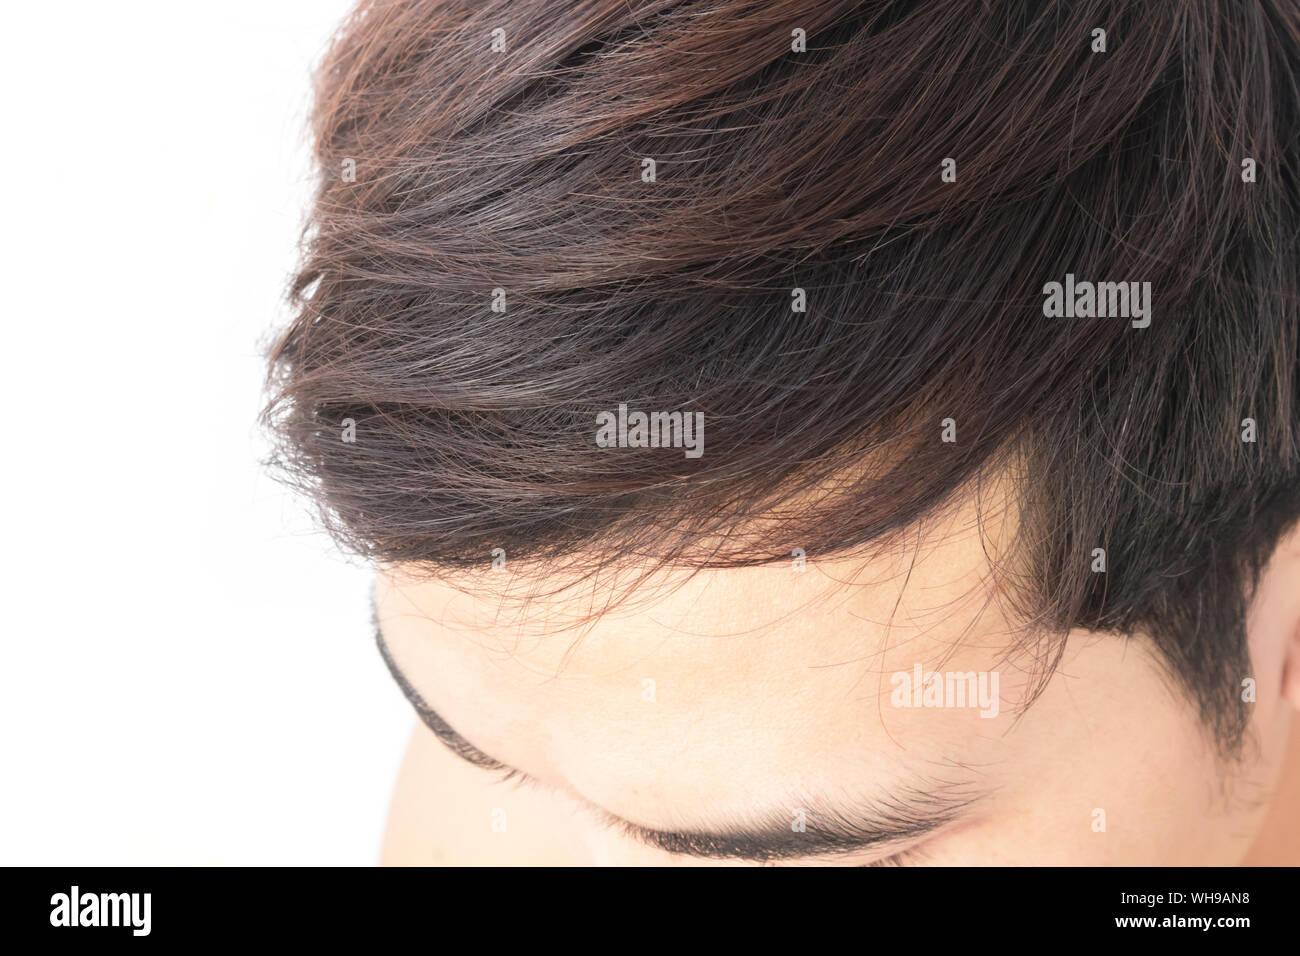 Immagine ritagliata dell uomo con i capelli neri contro uno sfondo bianco Foto Stock